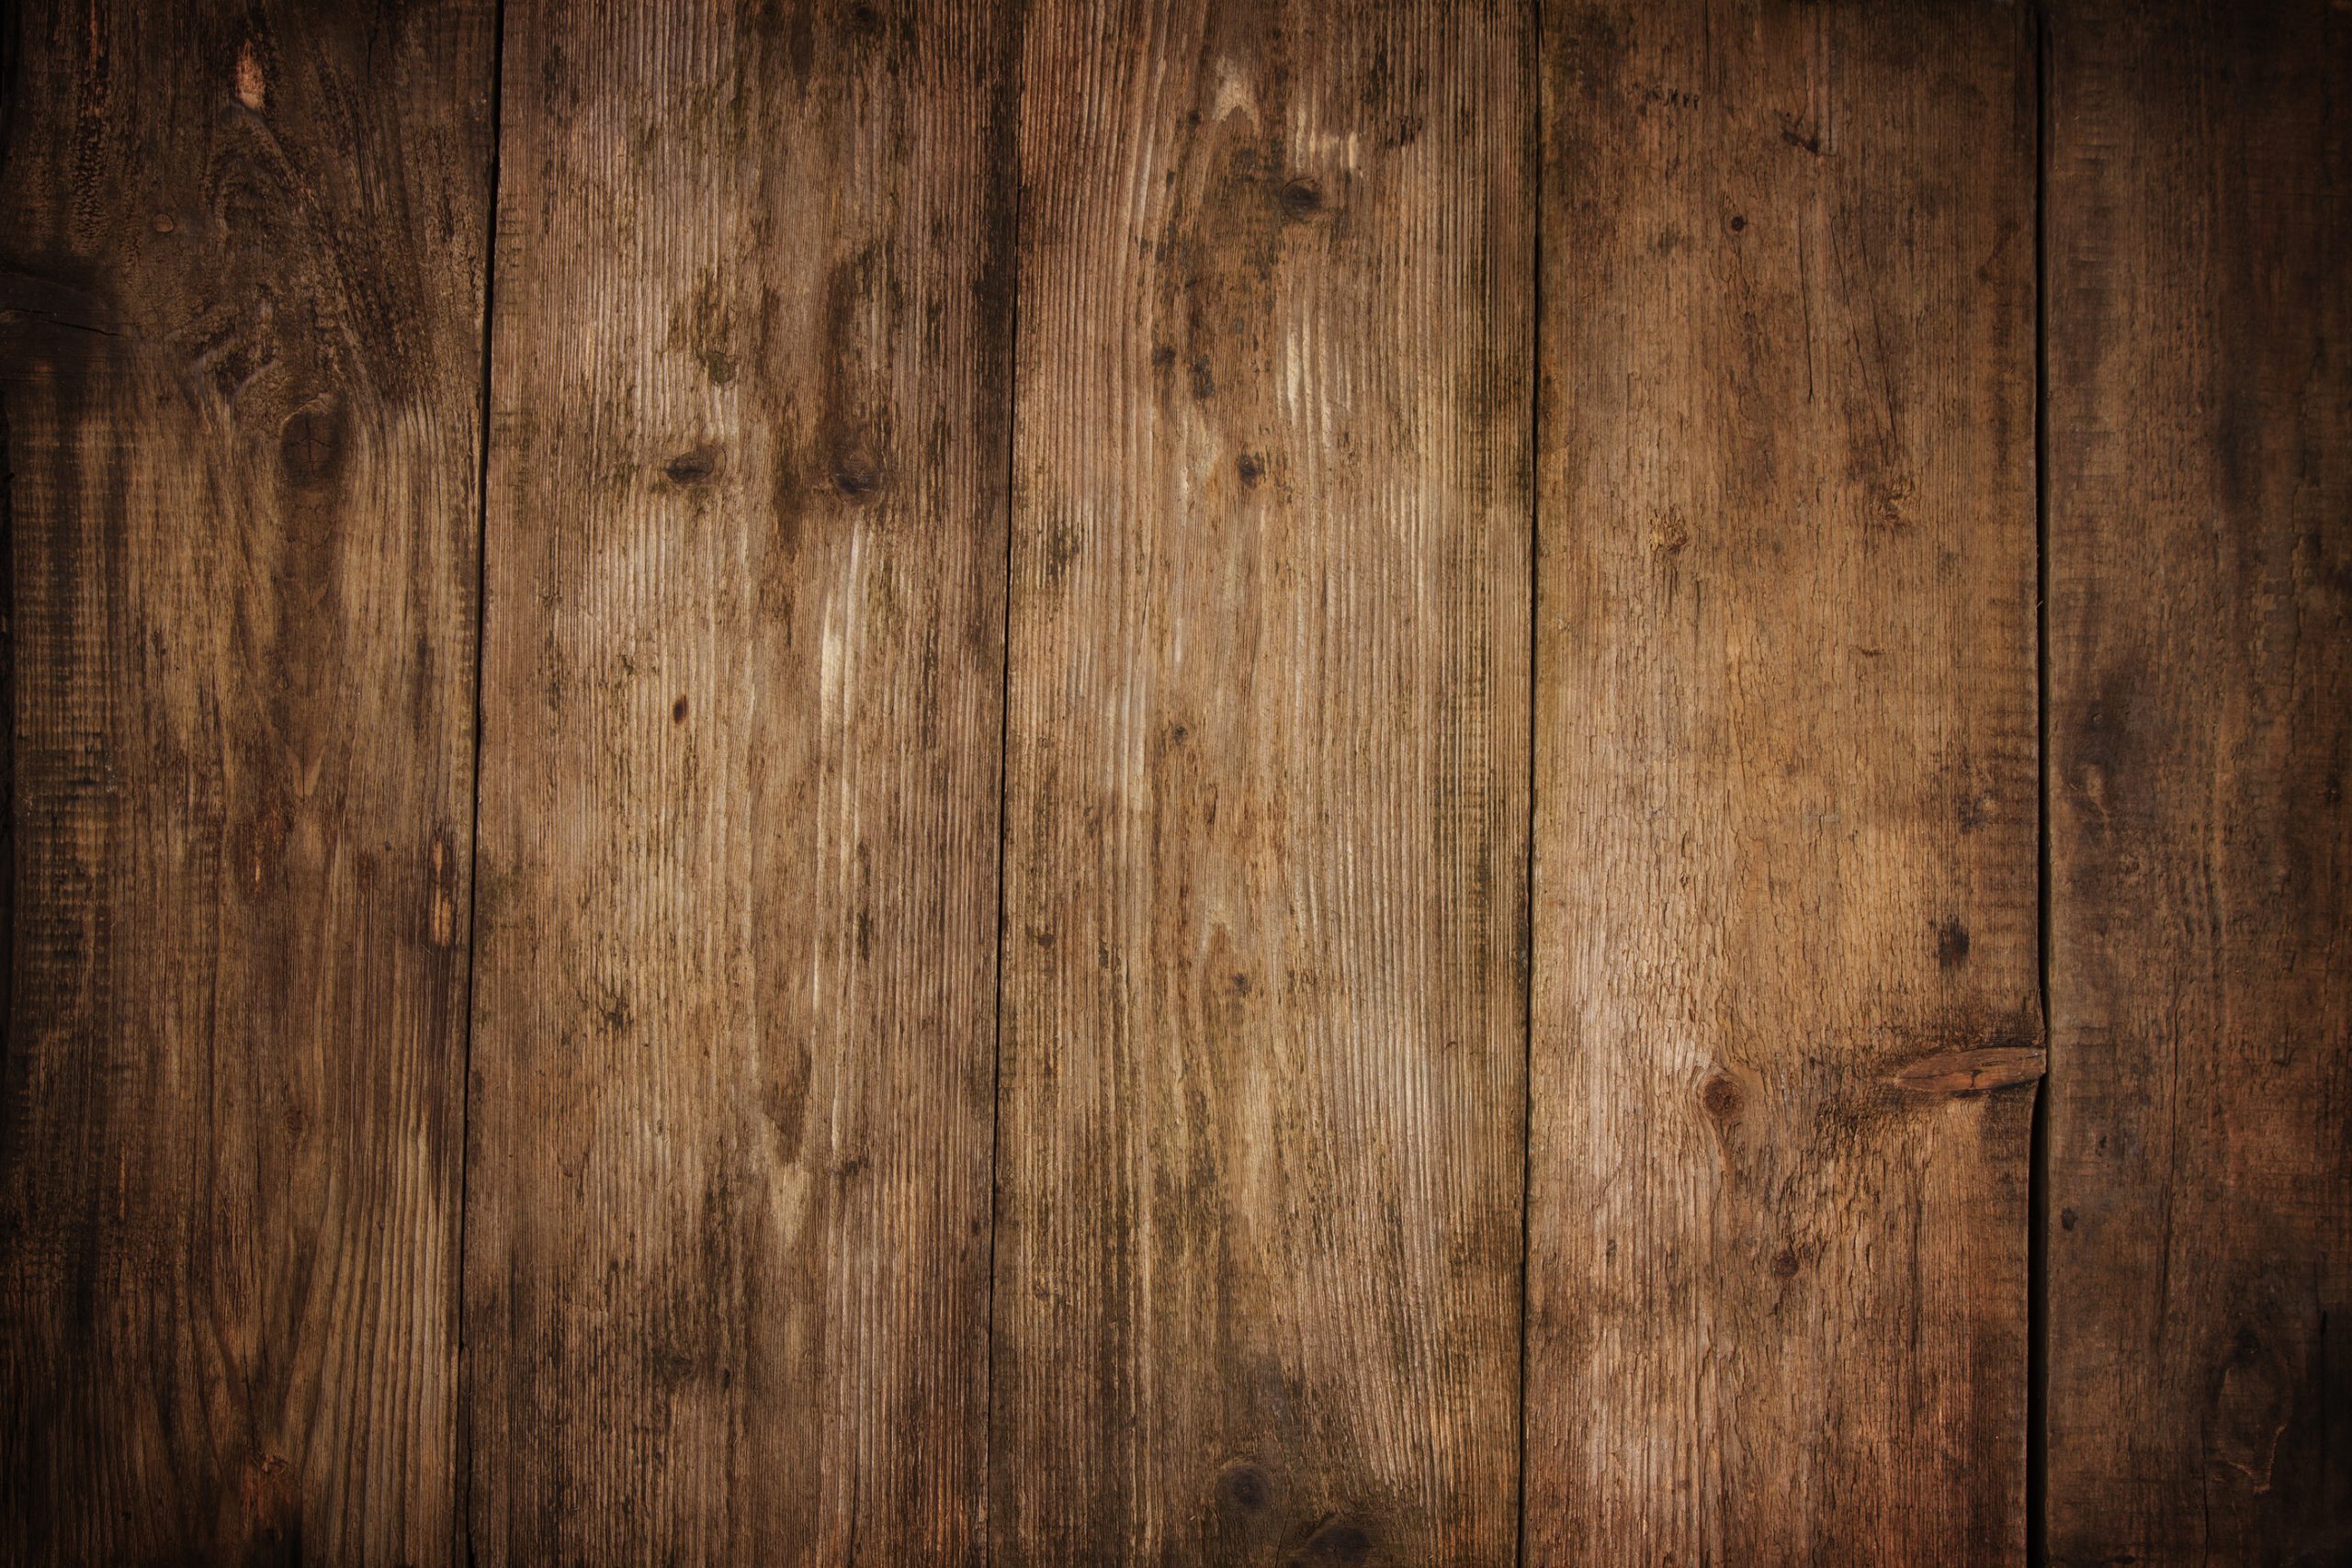 Nền gỗ sồi: Với ảnh nền gỗ sồi, bạn có thể đưa ra một chút nét giàu truyền thống cho căn phòng của mình. Với nền gỗ sồi, bạn có thể tạo ra sự trong trẻo và đầy cảm hứng cho không gian sống của mình. Hãy tận hưởng một chút cảm giác sự ấm cúng nhưng vẫn sang trọng của phong cách này.